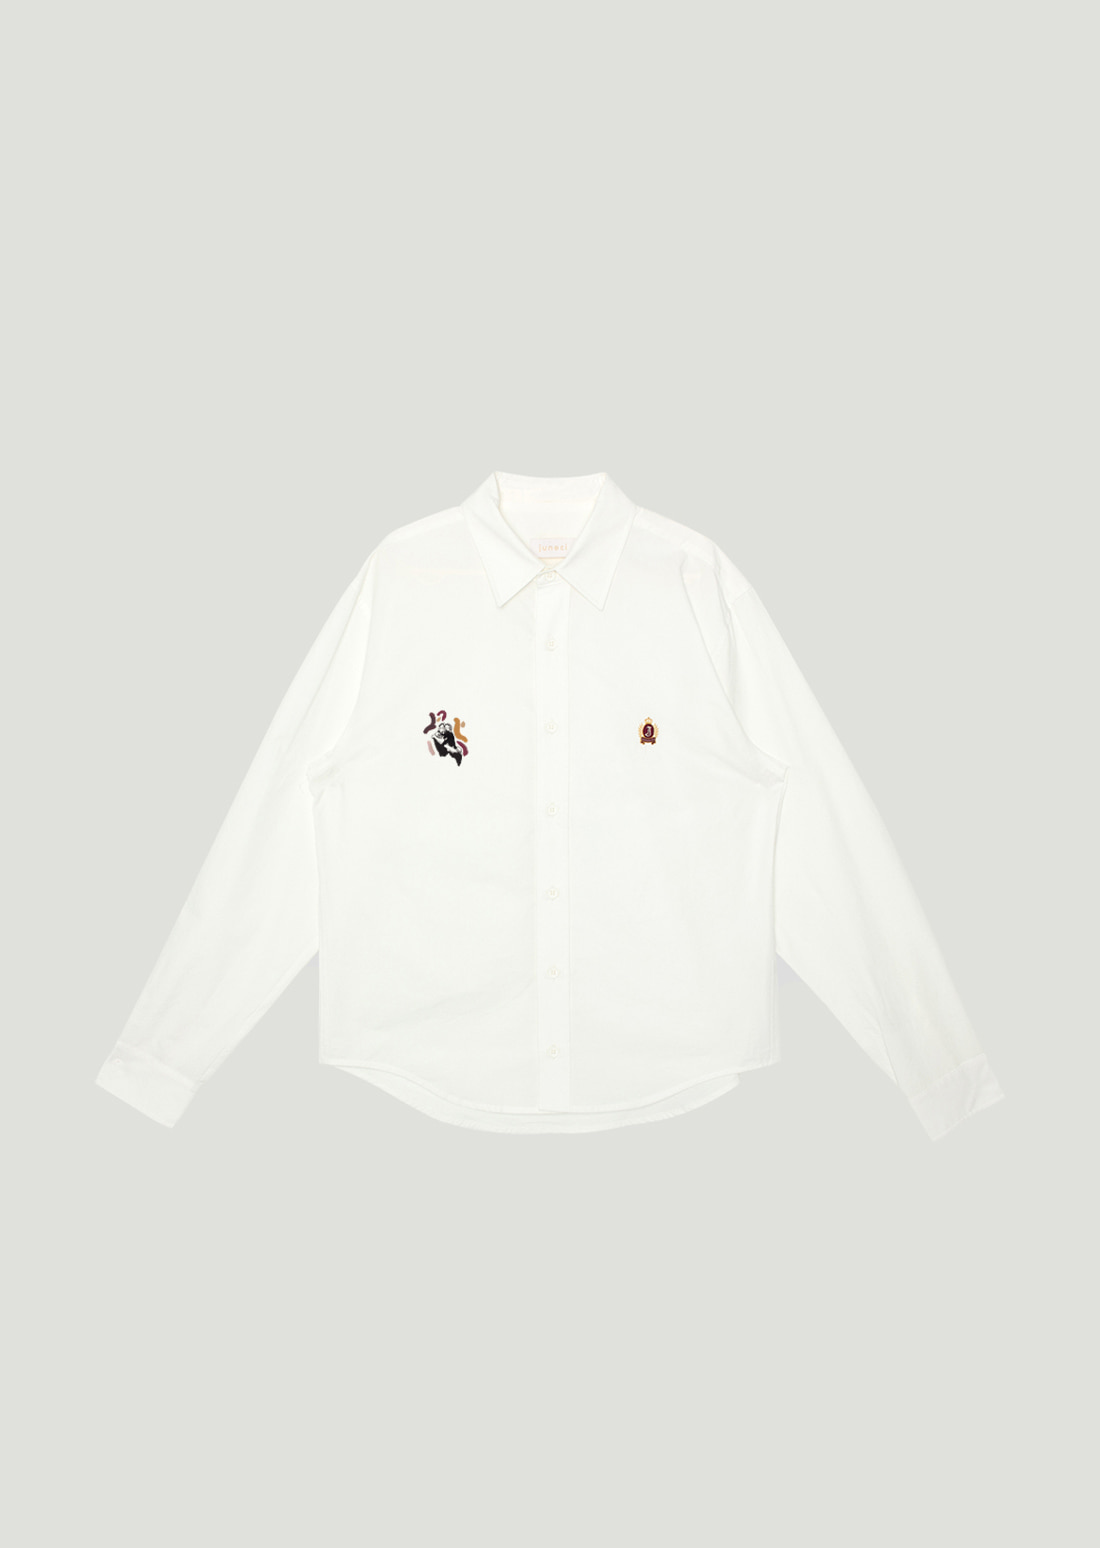 J Emblem Shirt (White) x MIN KYUNGHEE